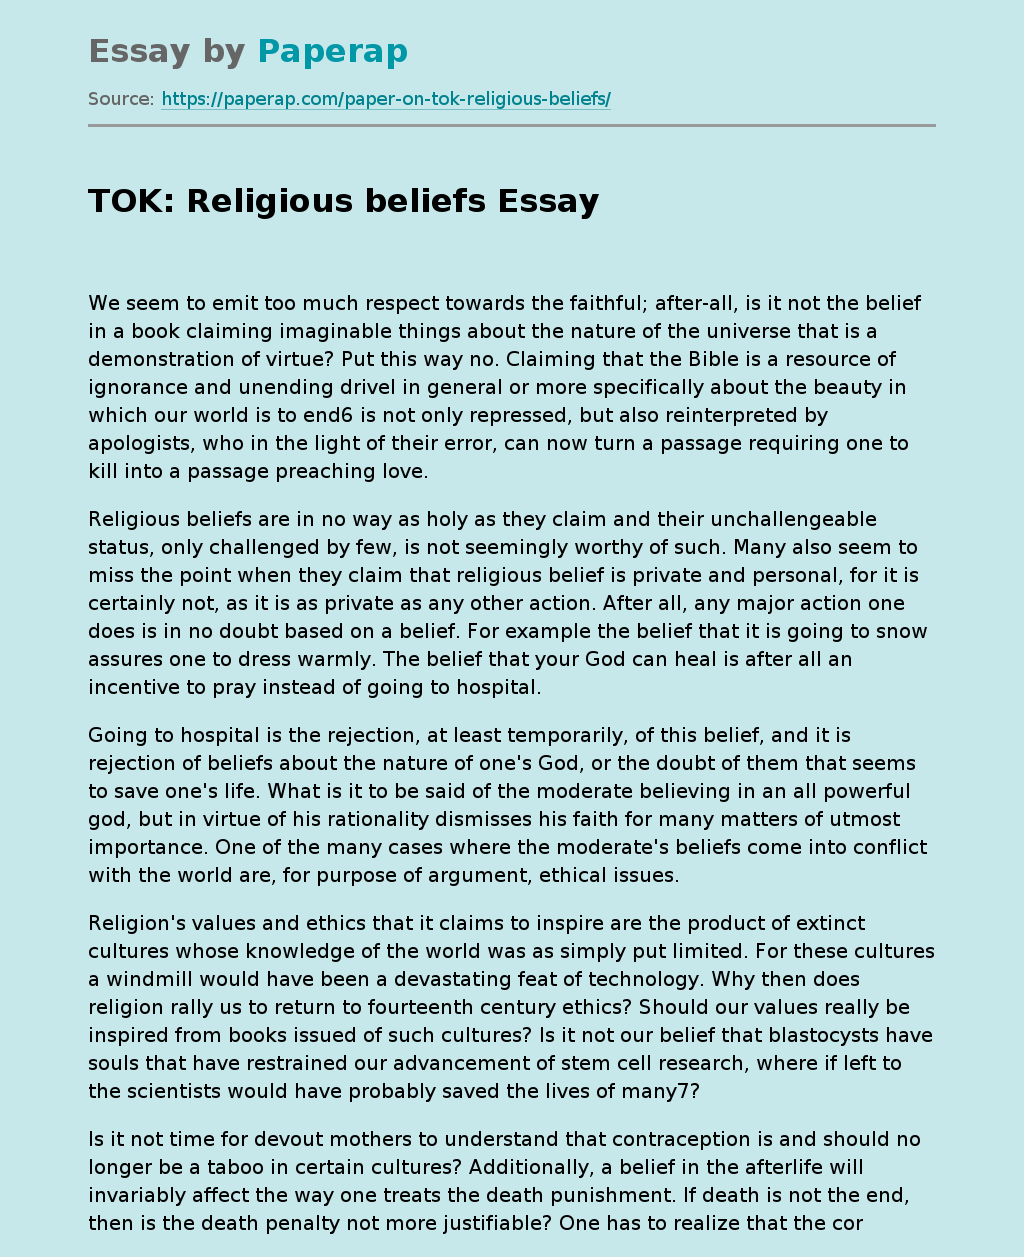 TOK: Religious beliefs